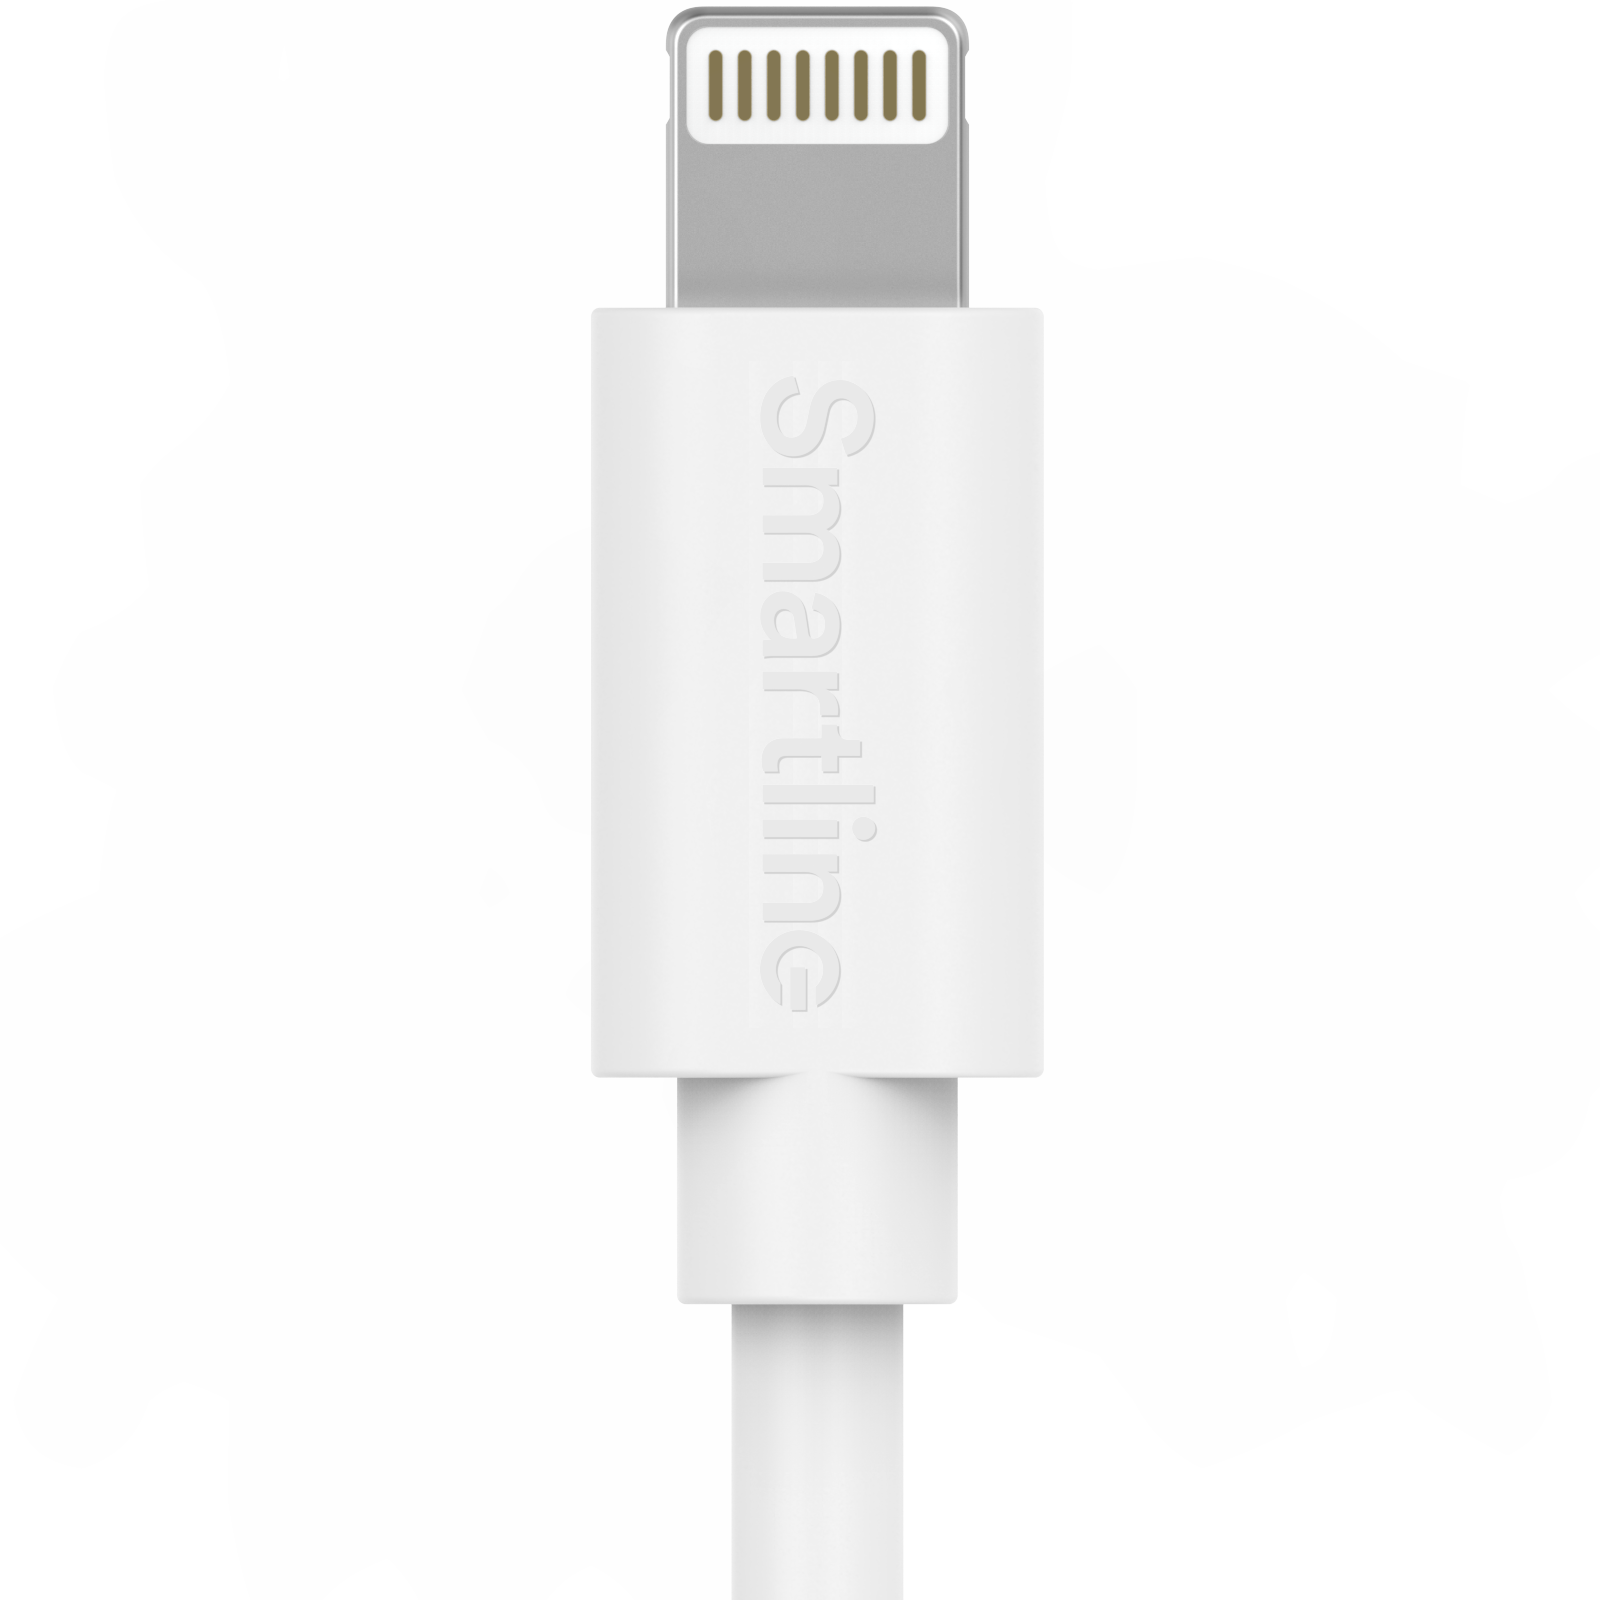 Cargador completo para iPhone SE (2020) - Cable de 2m y cargador de pared - Smartline